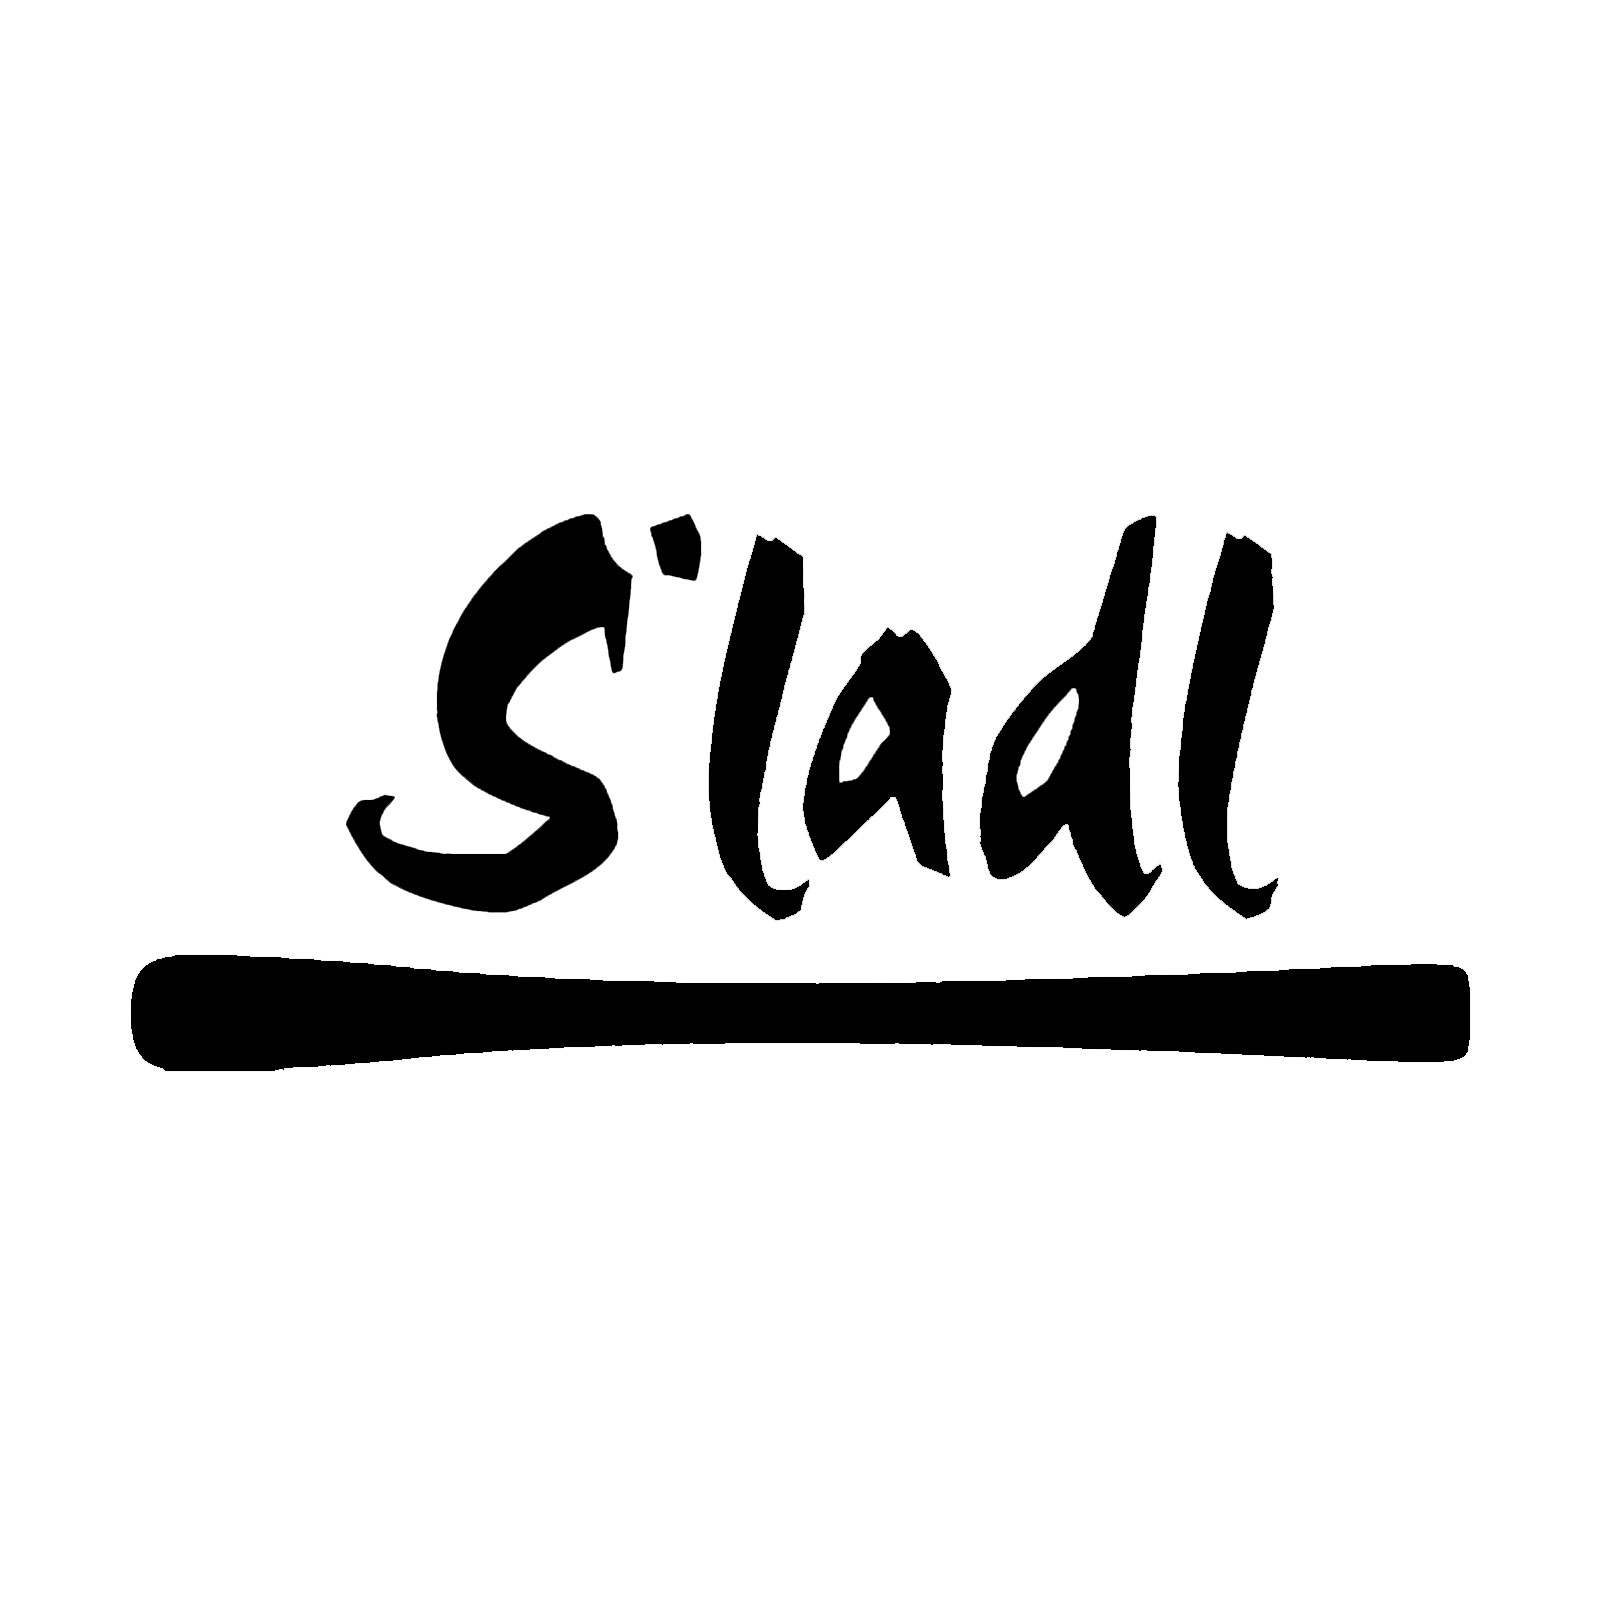 Schiladl - Sladl